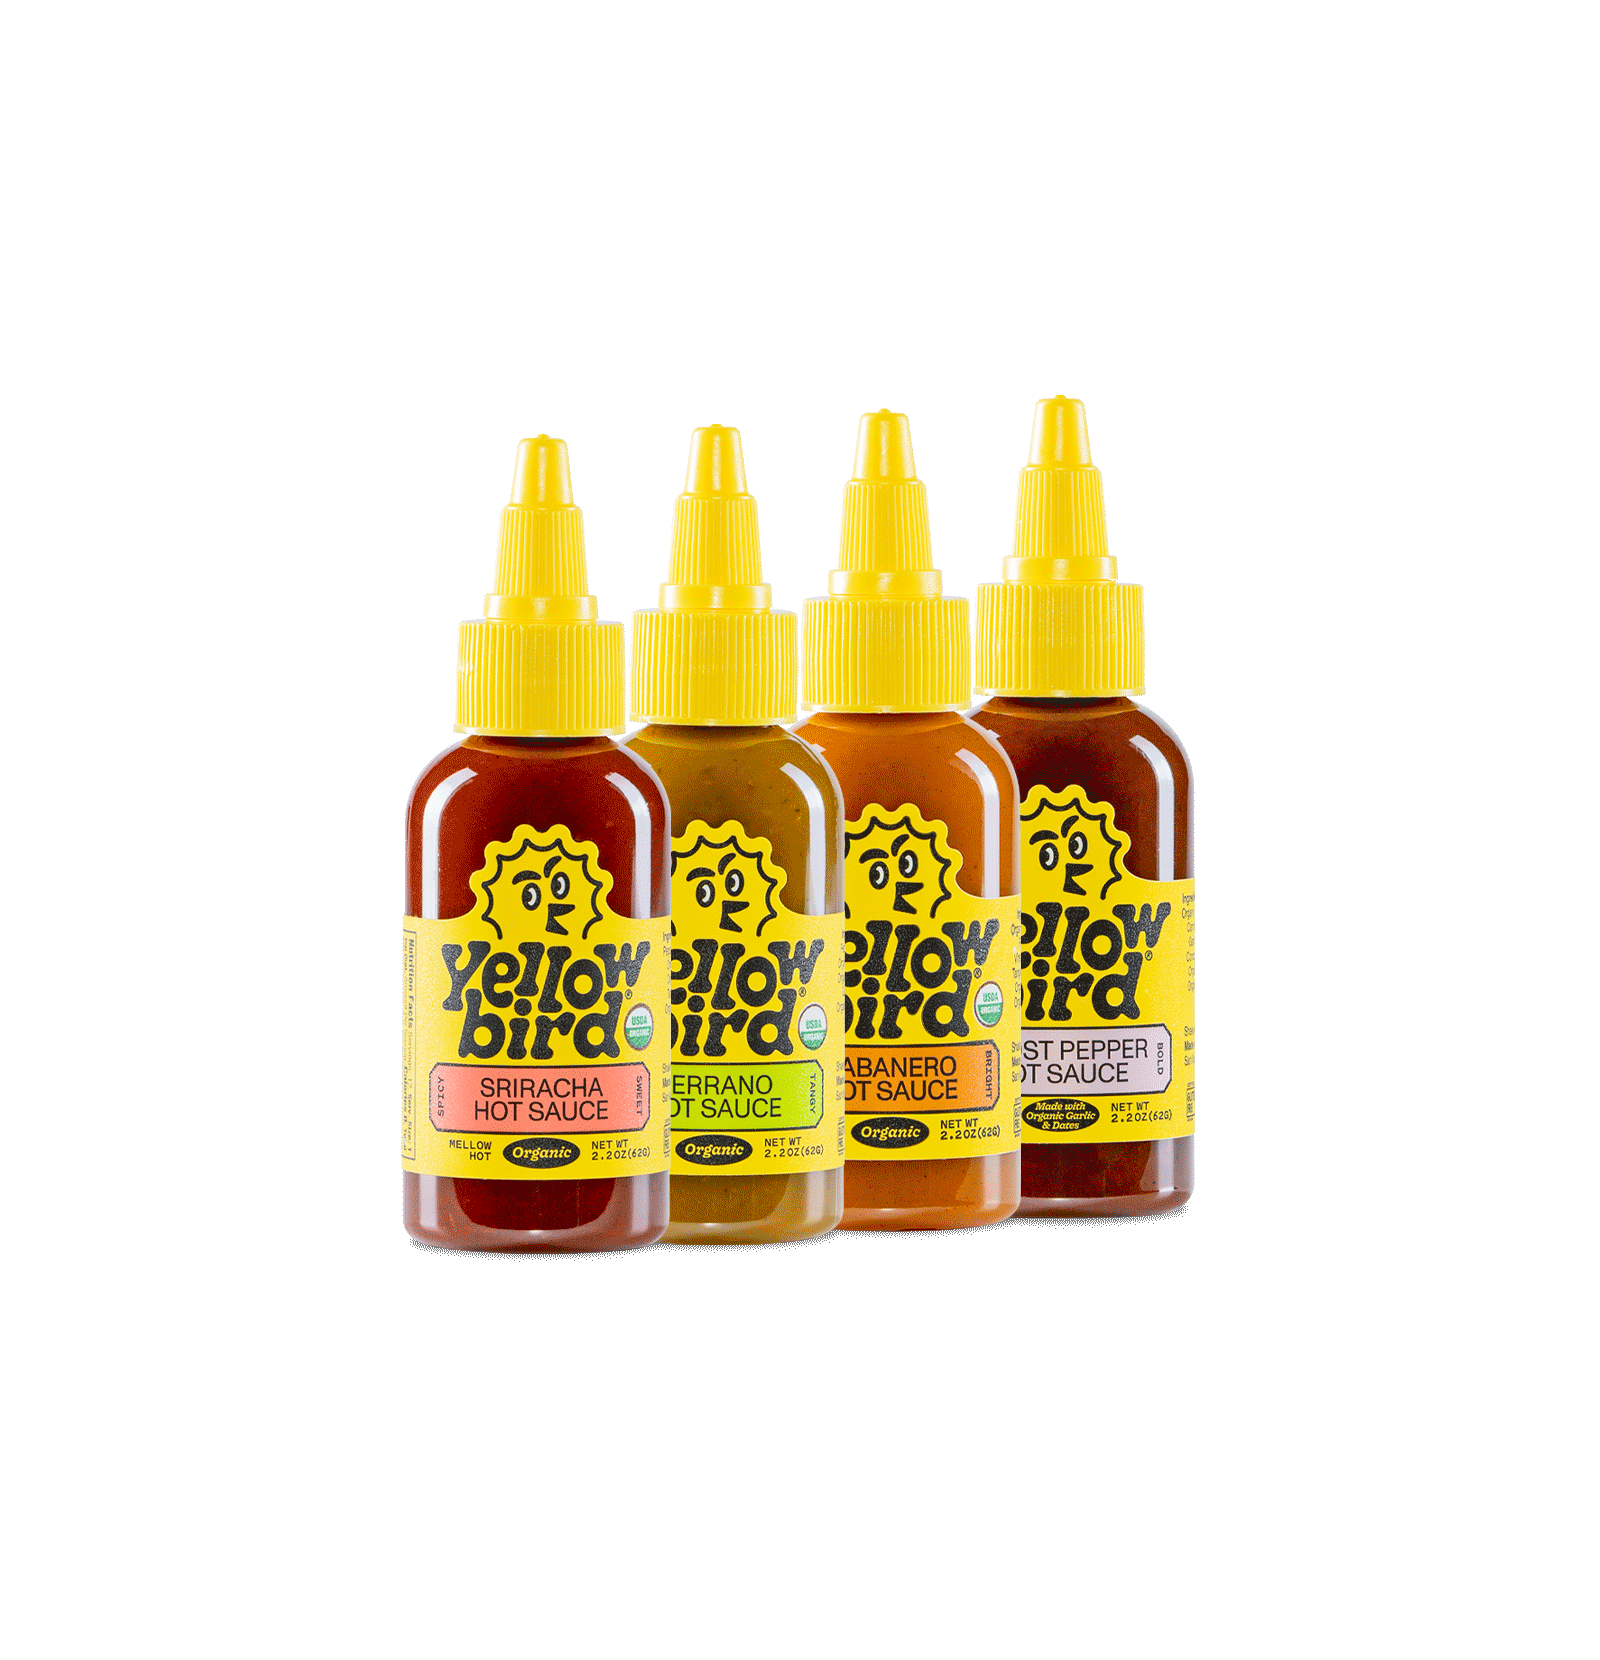 Yellowbird Organic Hot Sauce 2.2 oz. Variety 4-Pack